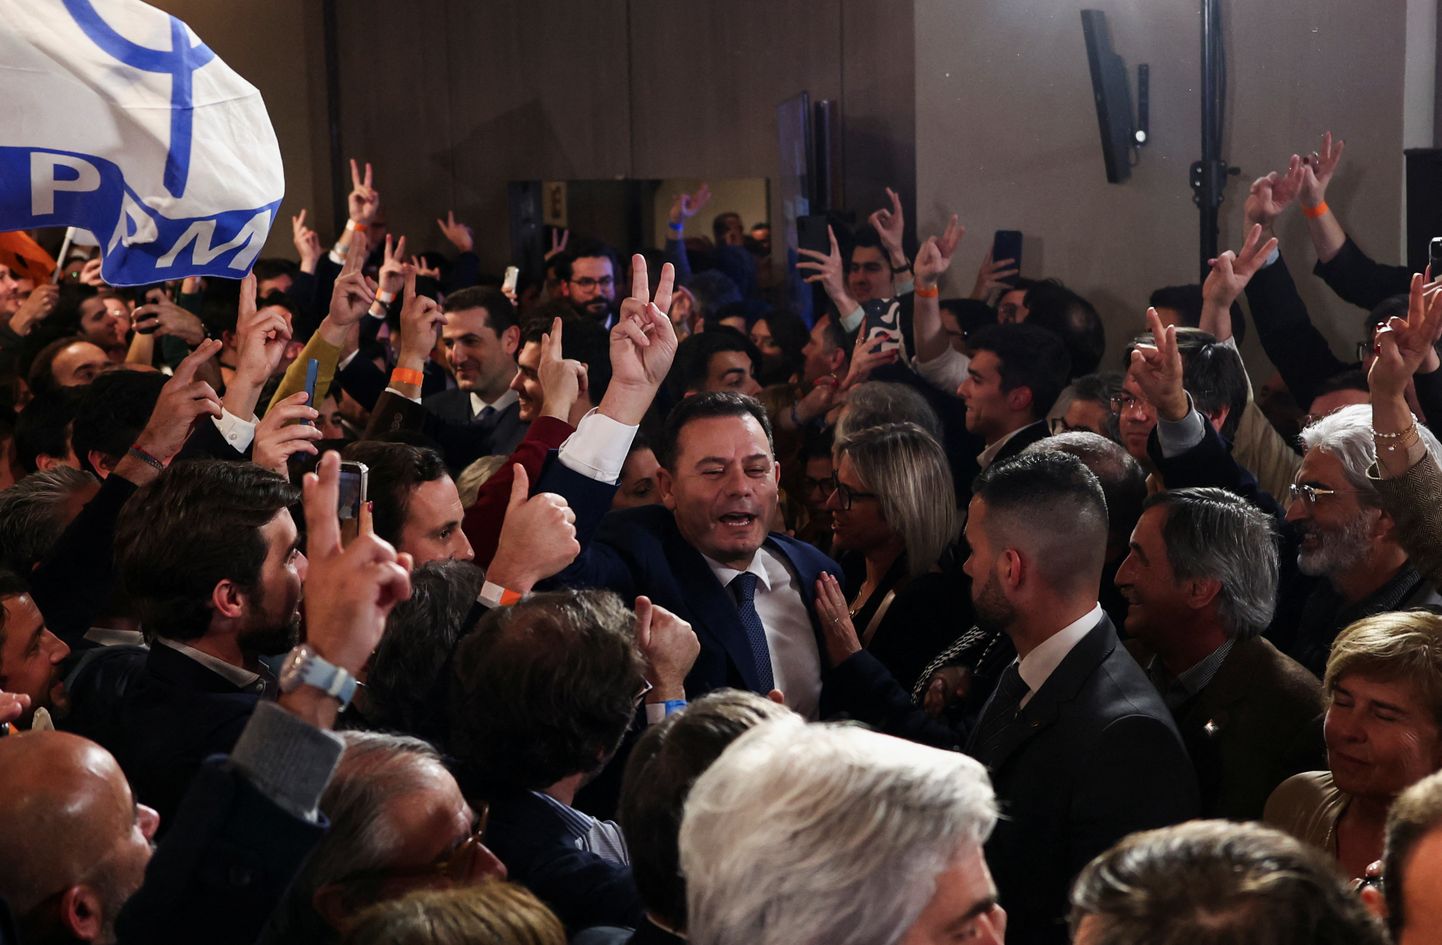 Demokraatliku Alliansi (AD) liider Luis Montenegro žestikuleerib, kui reageerib pärast Lissaboni üldvalimiste tulemust toetajate kõrval.